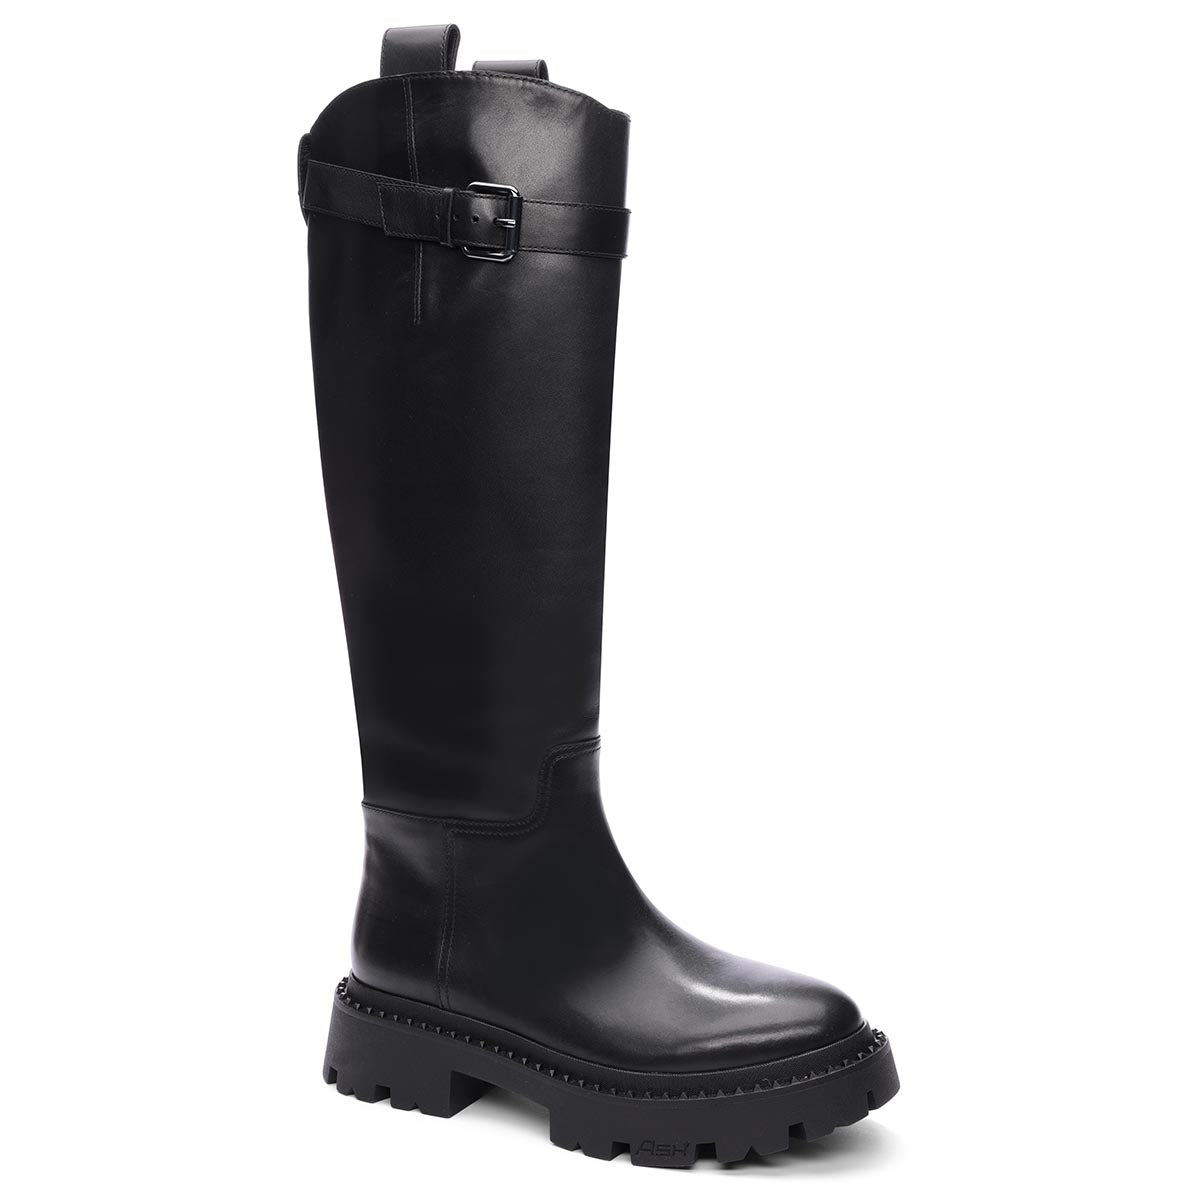 ASH Boots | Shop Combat Boots, Lug Sole Boots, & More